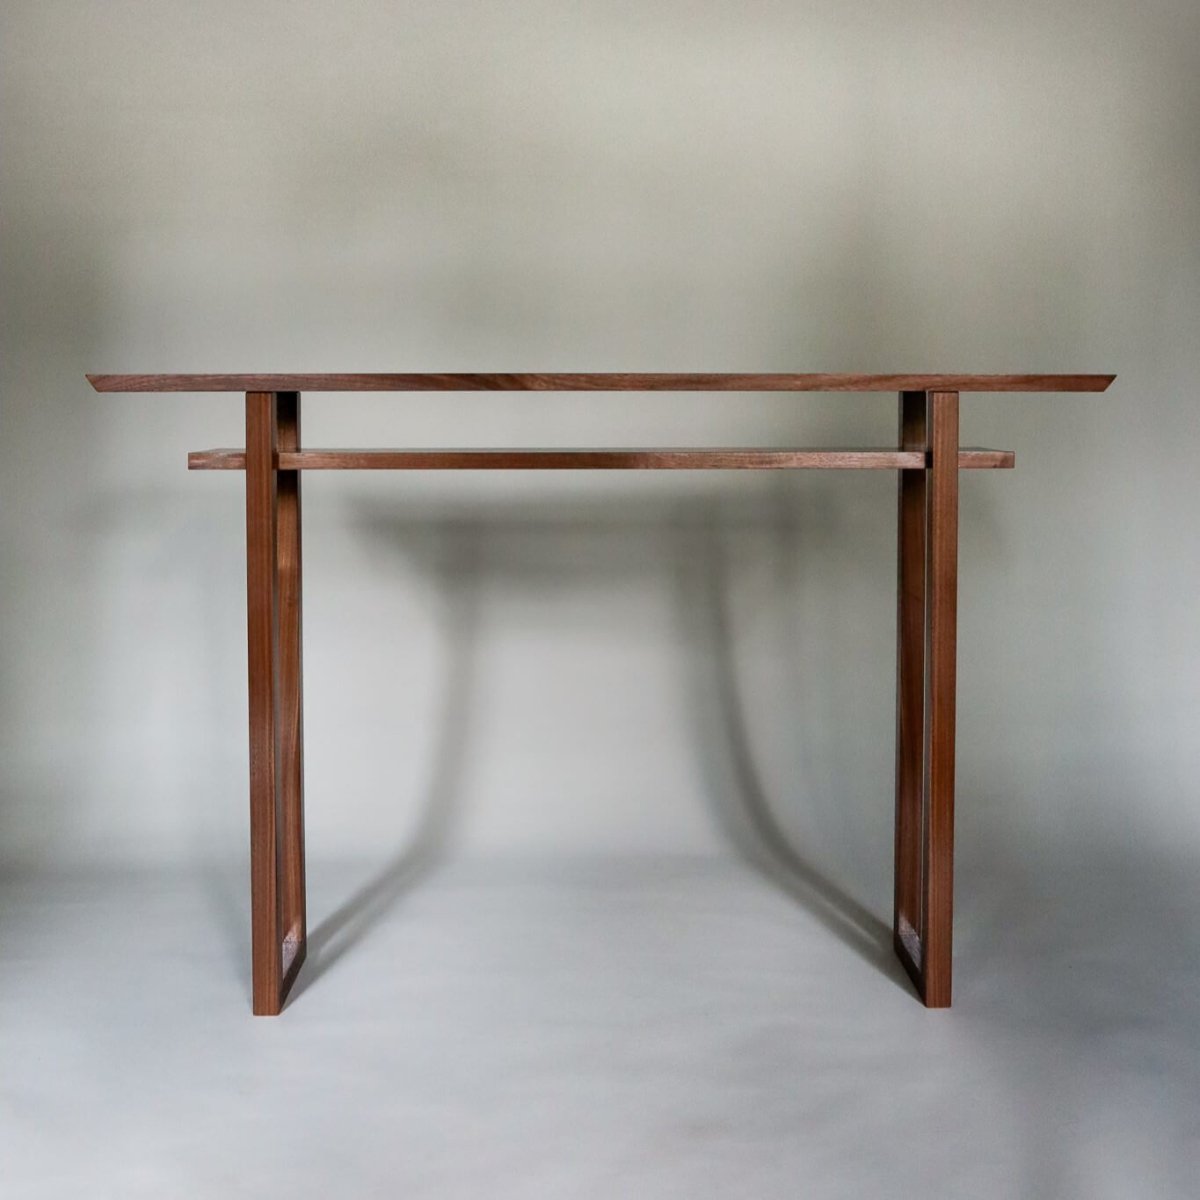 https://mokuzai-furniture.com/cdn/shop/products/walnut-console-table-with-shelf-MokuzaiFurniture-229991.jpg?v=1664911575&width=1445